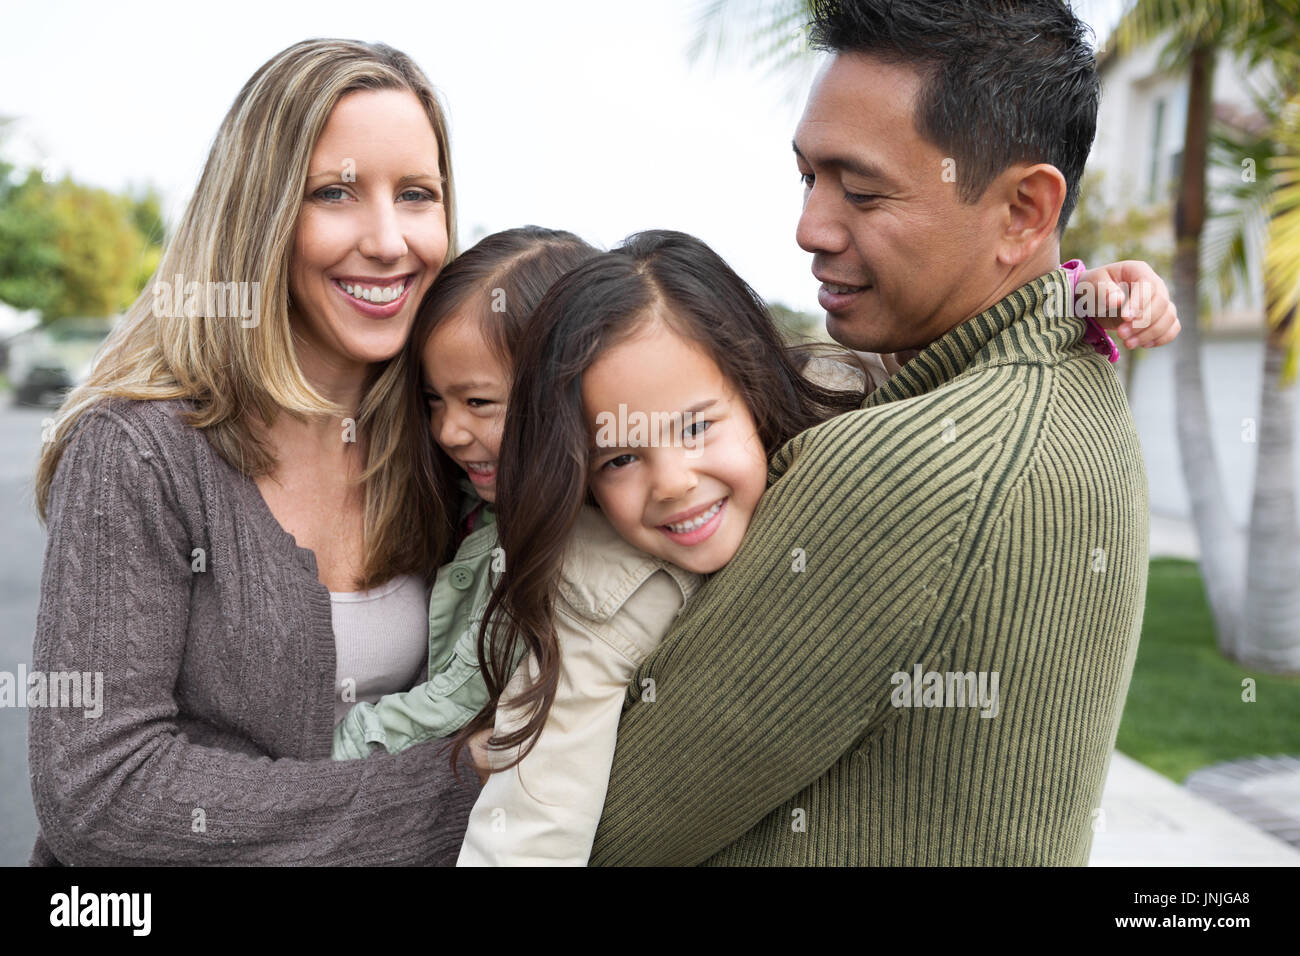 Mixed race family. Stock Photo